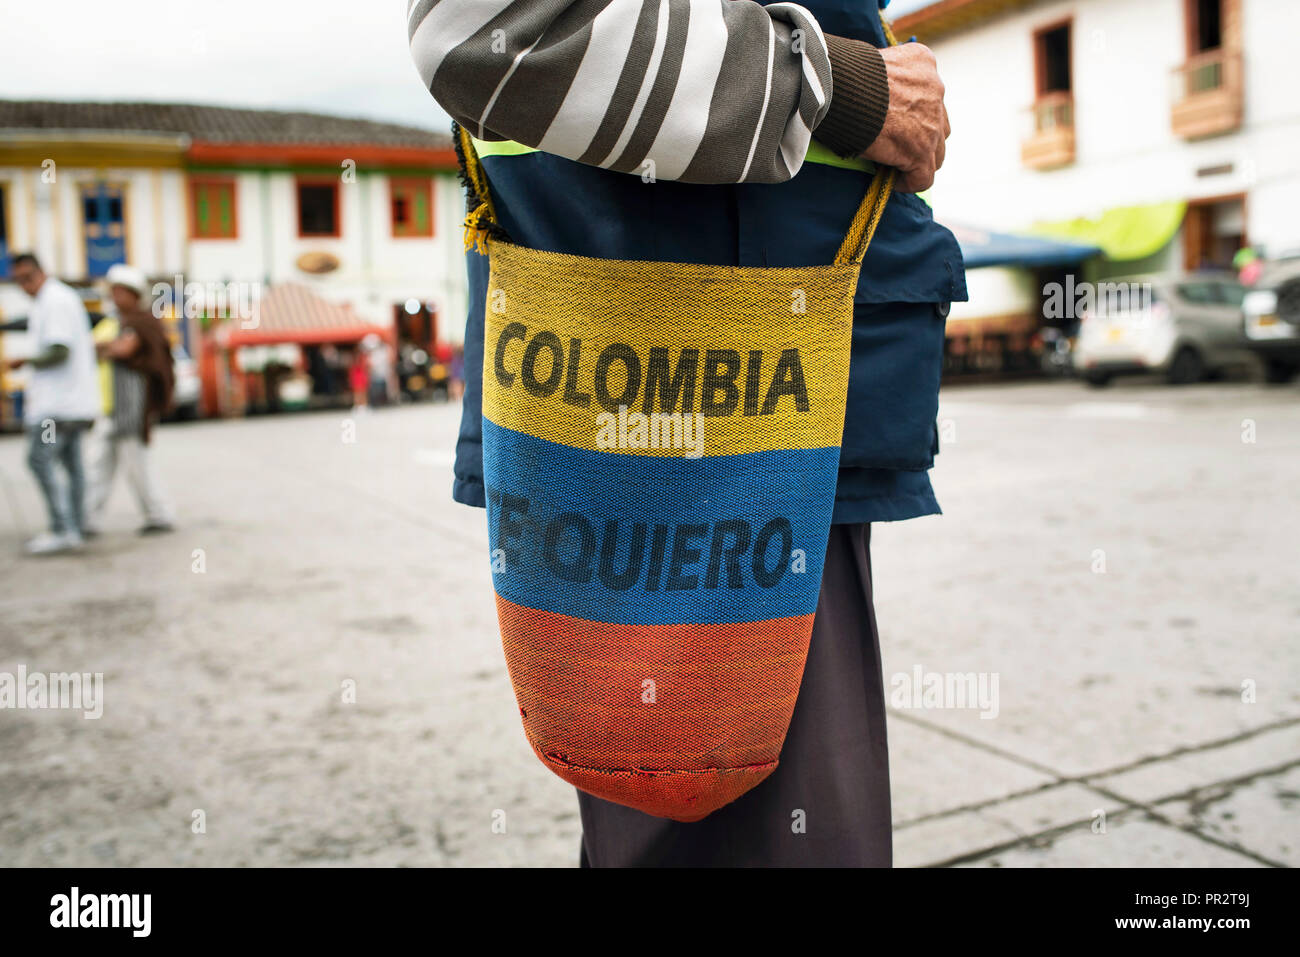 Kolumbianische Handwerker Tasche von einem patriotischen lokaler Mann getragen. Handgefertigte mochilla mit nationalen Farben. Salento, Kolumbien. Sep 2018 Stockfoto